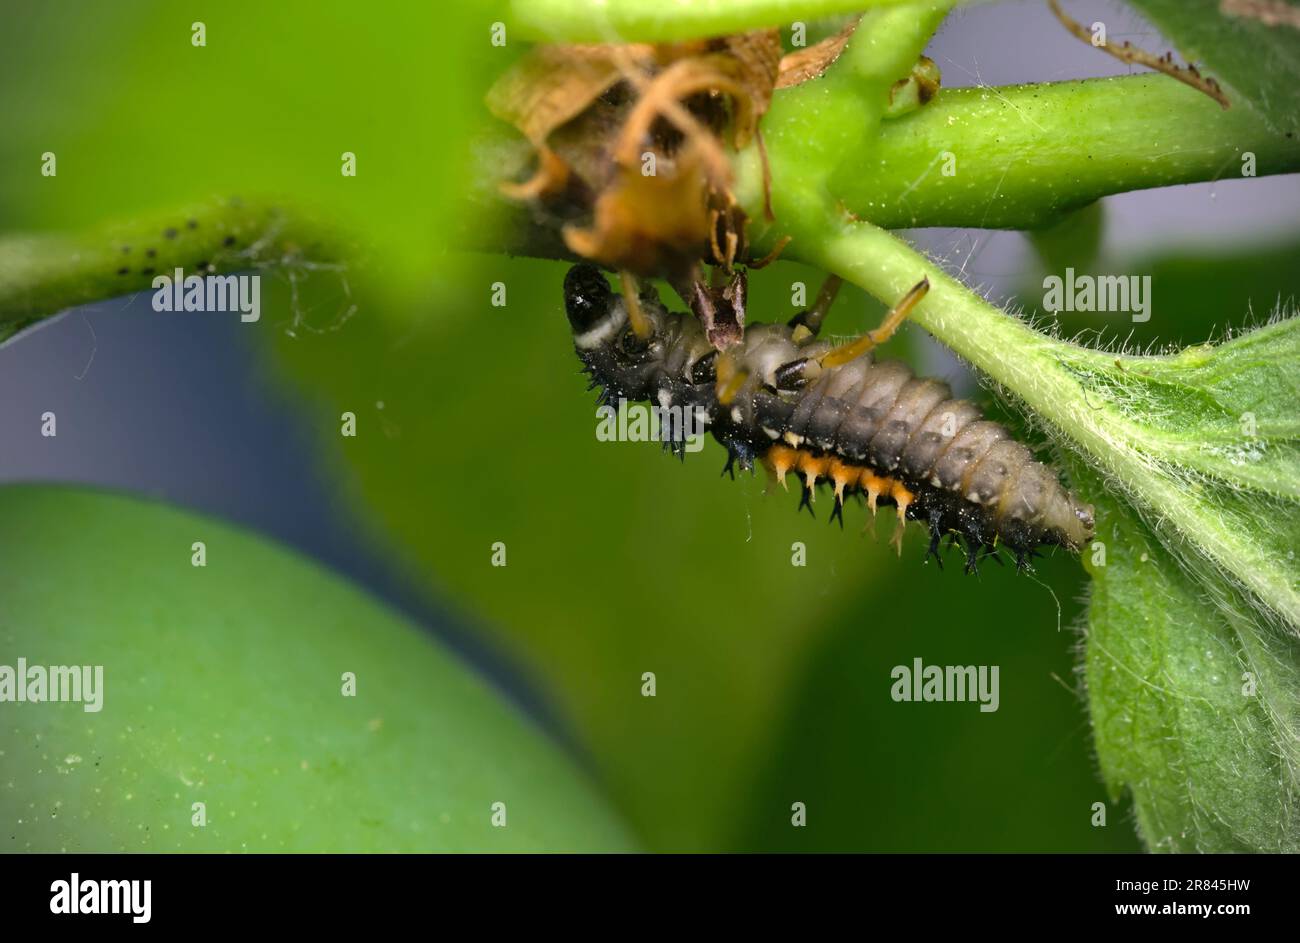 Larve d'un coléoptère asiatique (Harmonia axyridis) rampant sur une plante, macro photographie, insectes, gros plan, nature, biodiversité Banque D'Images